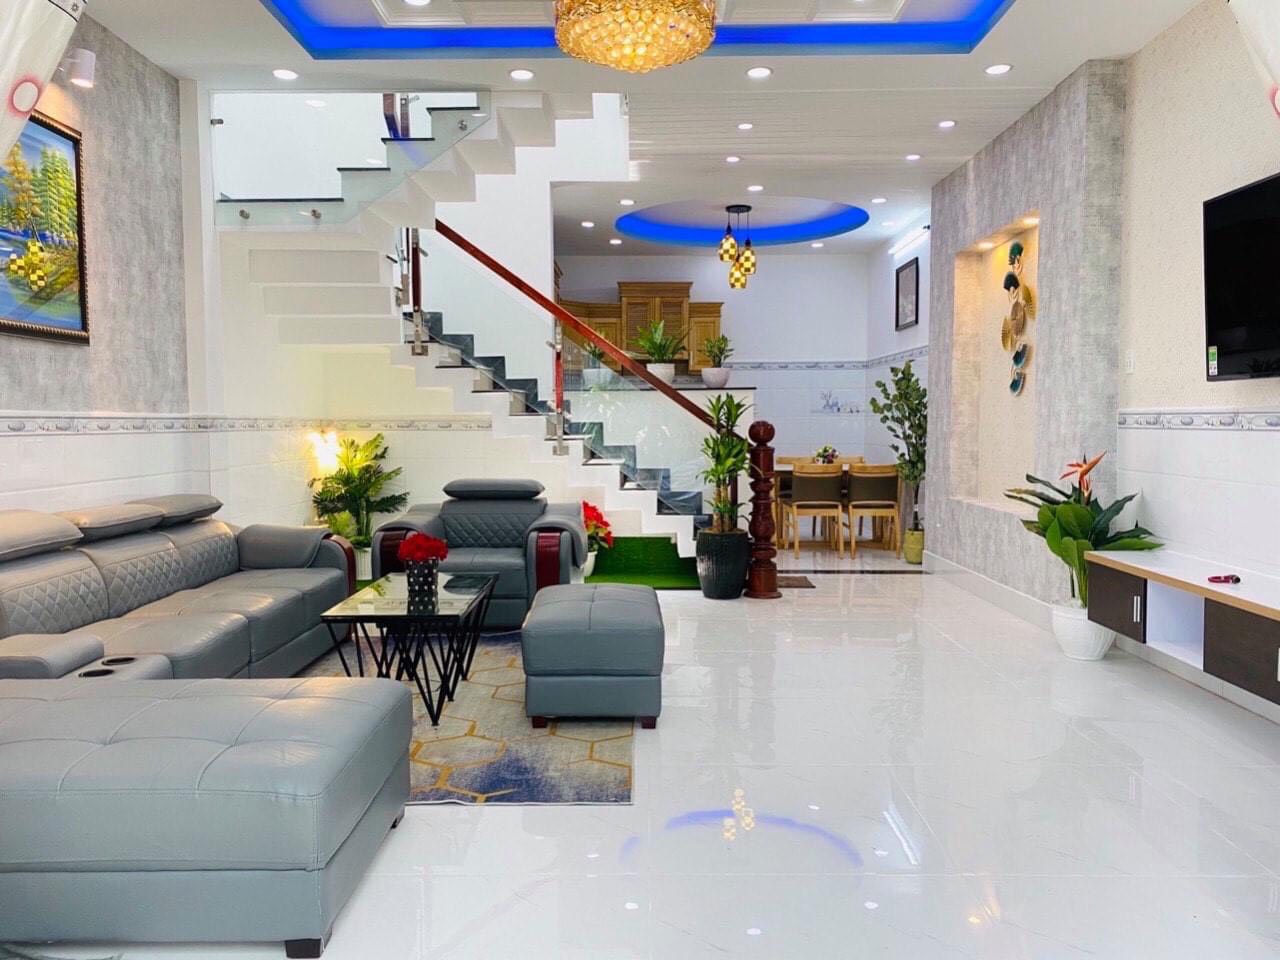 Bán nhà mua ở rất tốt đường Trần Hưng Đạo phường 2 quận 5, DTSD: 150m2, 3 lầu, giá chỉ 6.2 tỷ